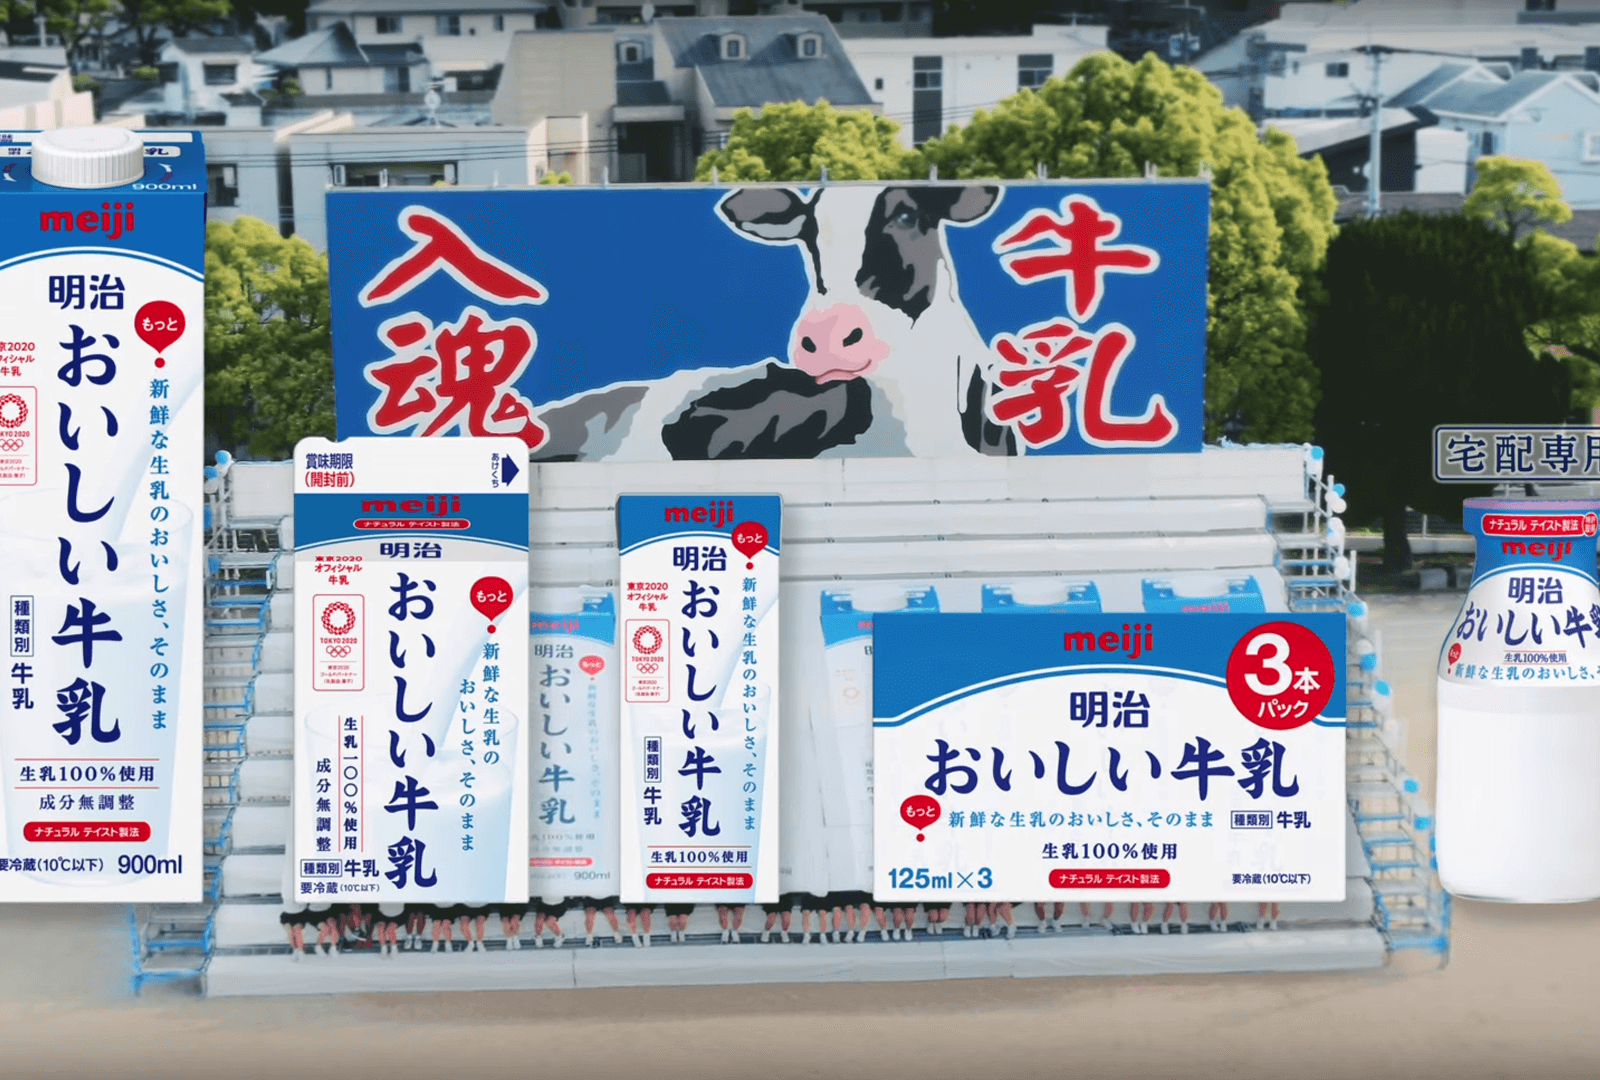 「明治おいしい牛乳」コマーシャル出演のお知らせ